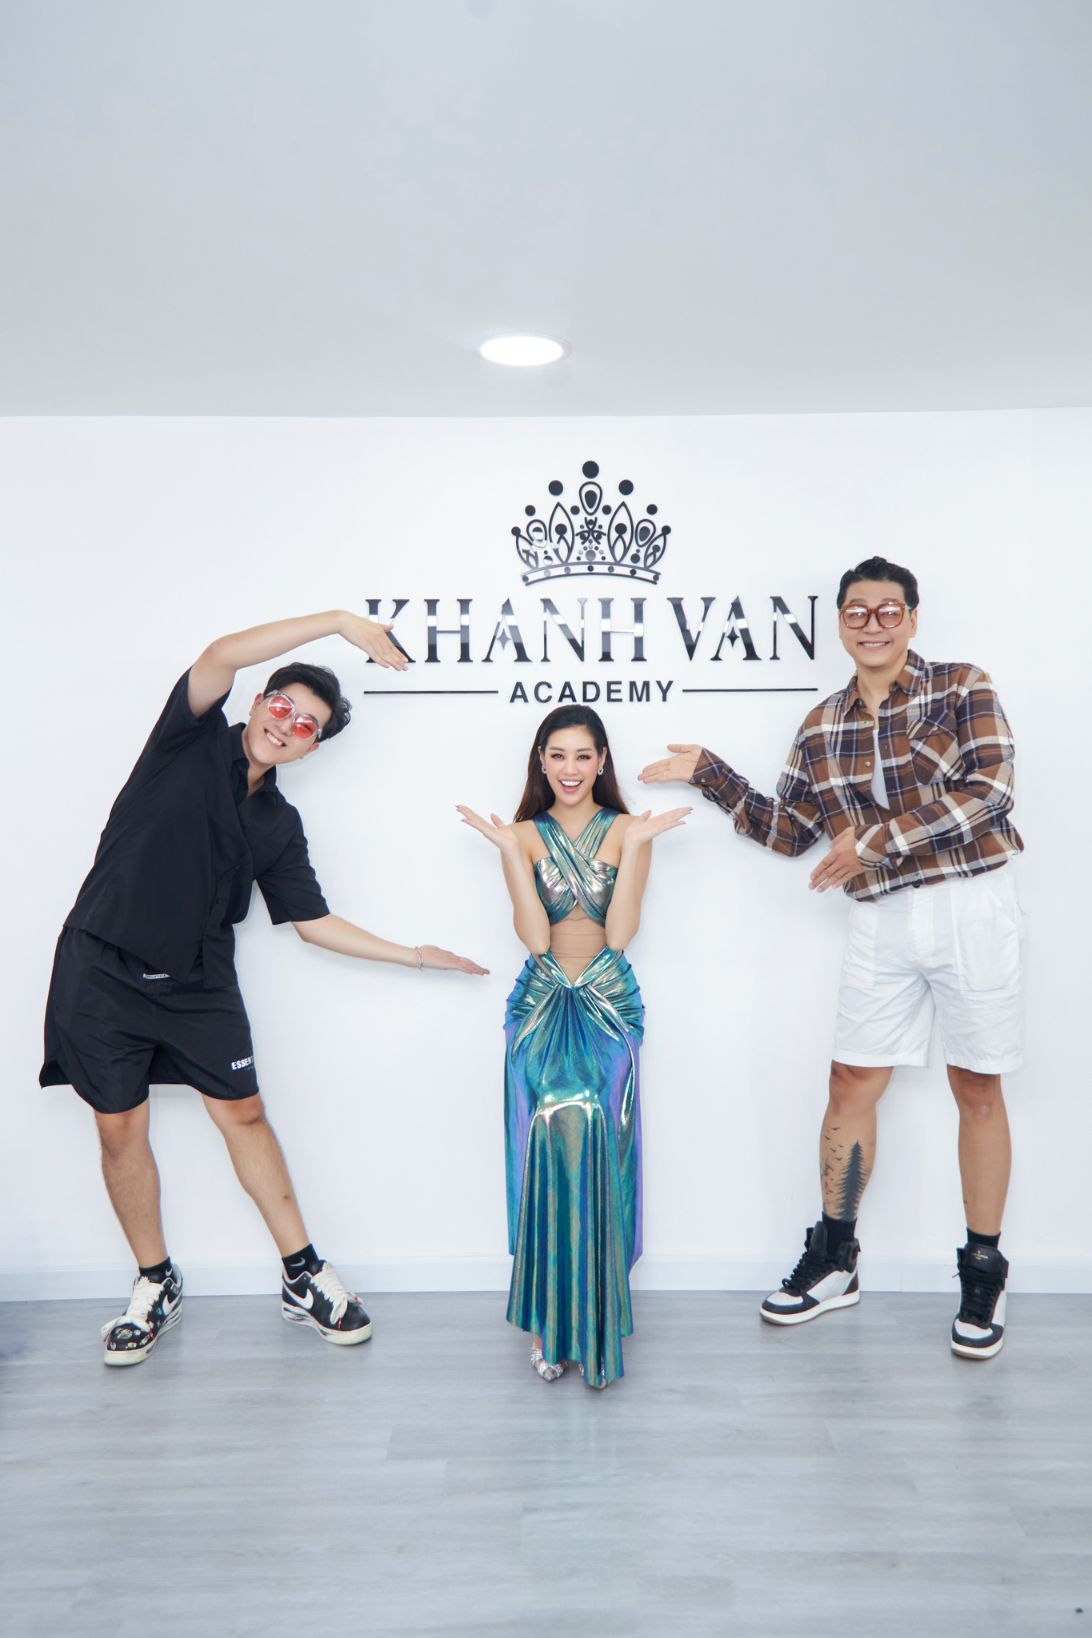 Hoa hau Khanh Van Tham do73 Dàn sao Việt đến chúc mừng Hoa hậu Khánh Vân khai trương học viện 